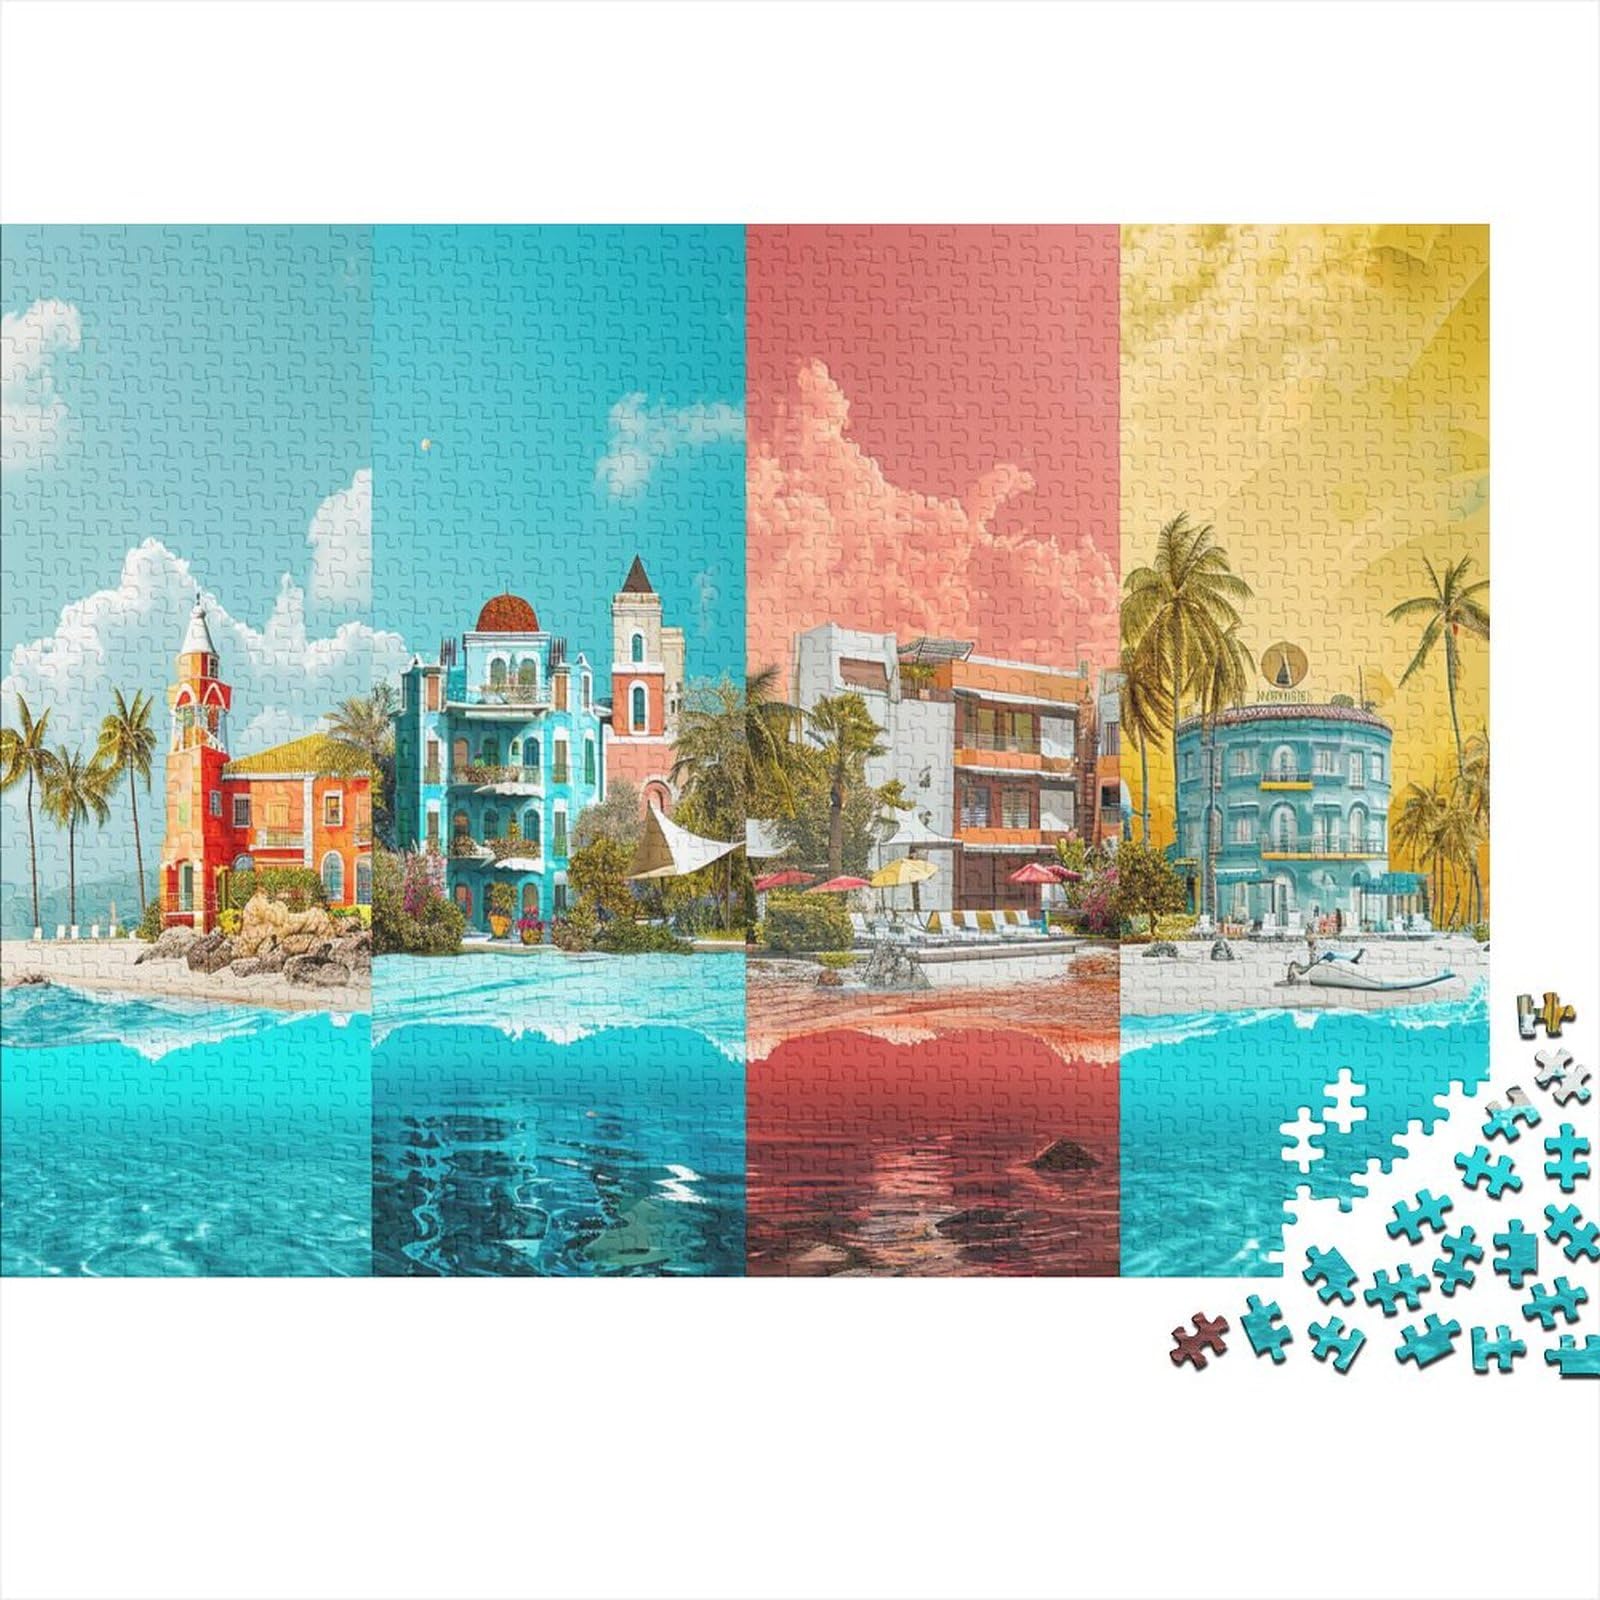 Strand 500 TeileErwachsene PuzzleImpossible Puzzle Strand Geschicklichkeits Spiel Home Dekoration Puzzle Geschenk Spielzeug Moderne Wohnkultur 500pcs (52x38cm)